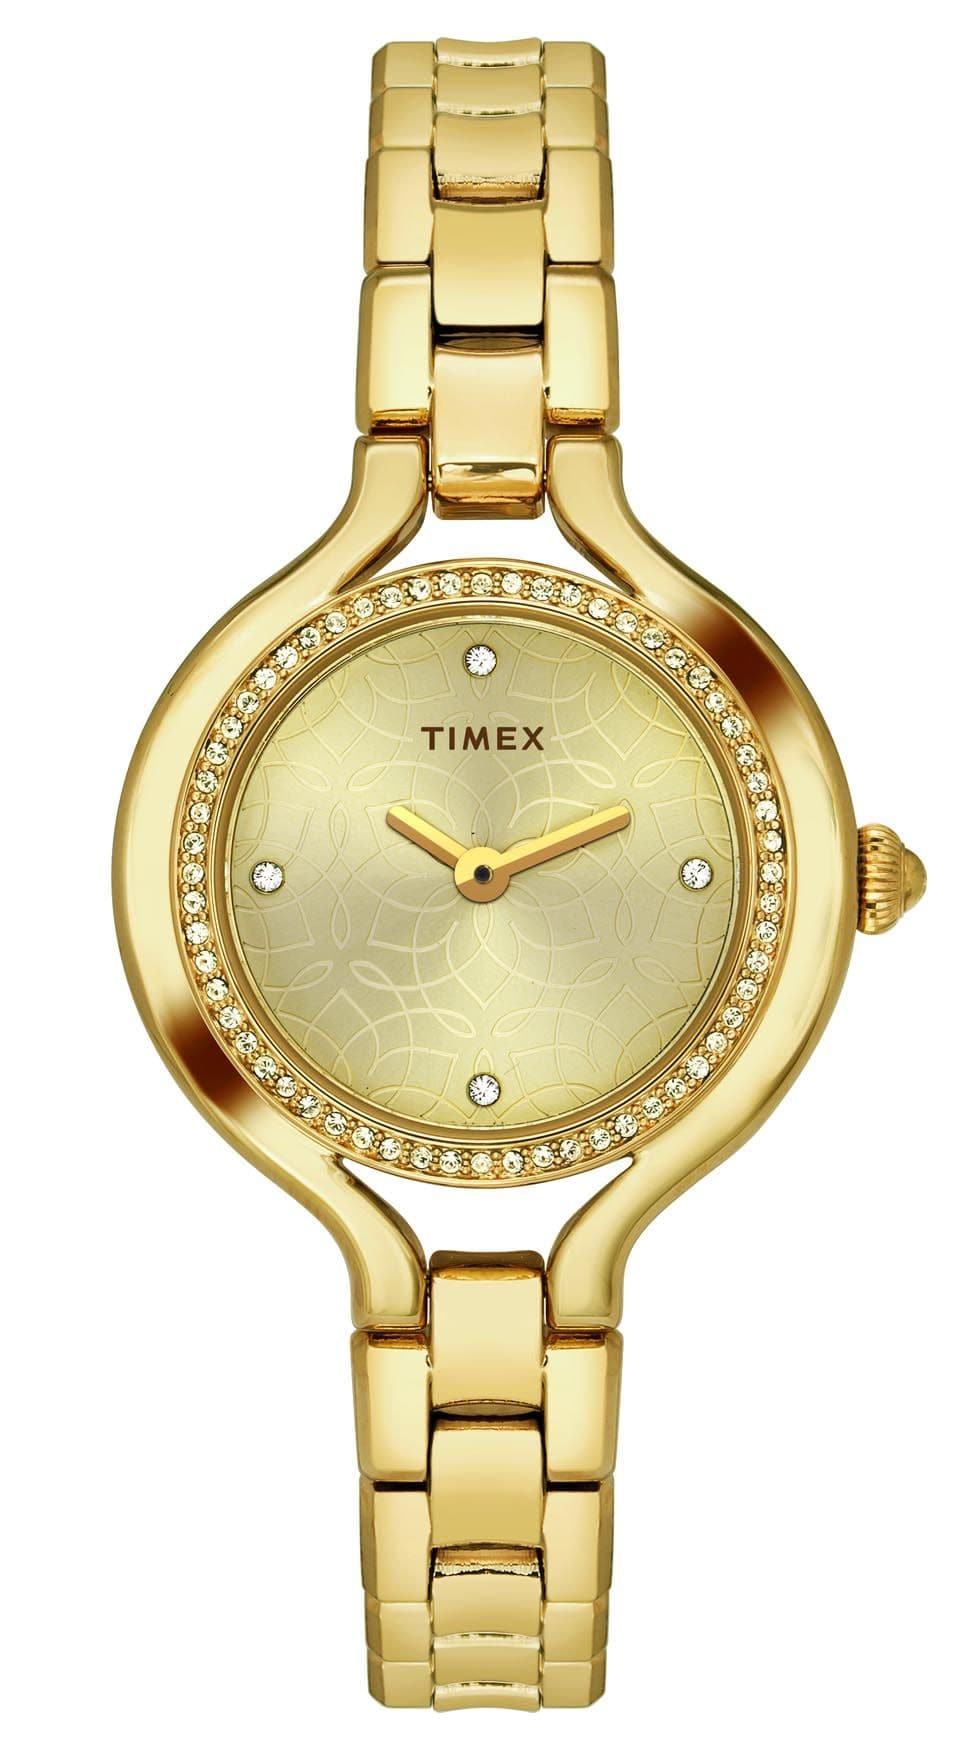 TIMEX GIORGIO GALLI SPECIAL EDITION TWEL14003 - Kamal Watch Company